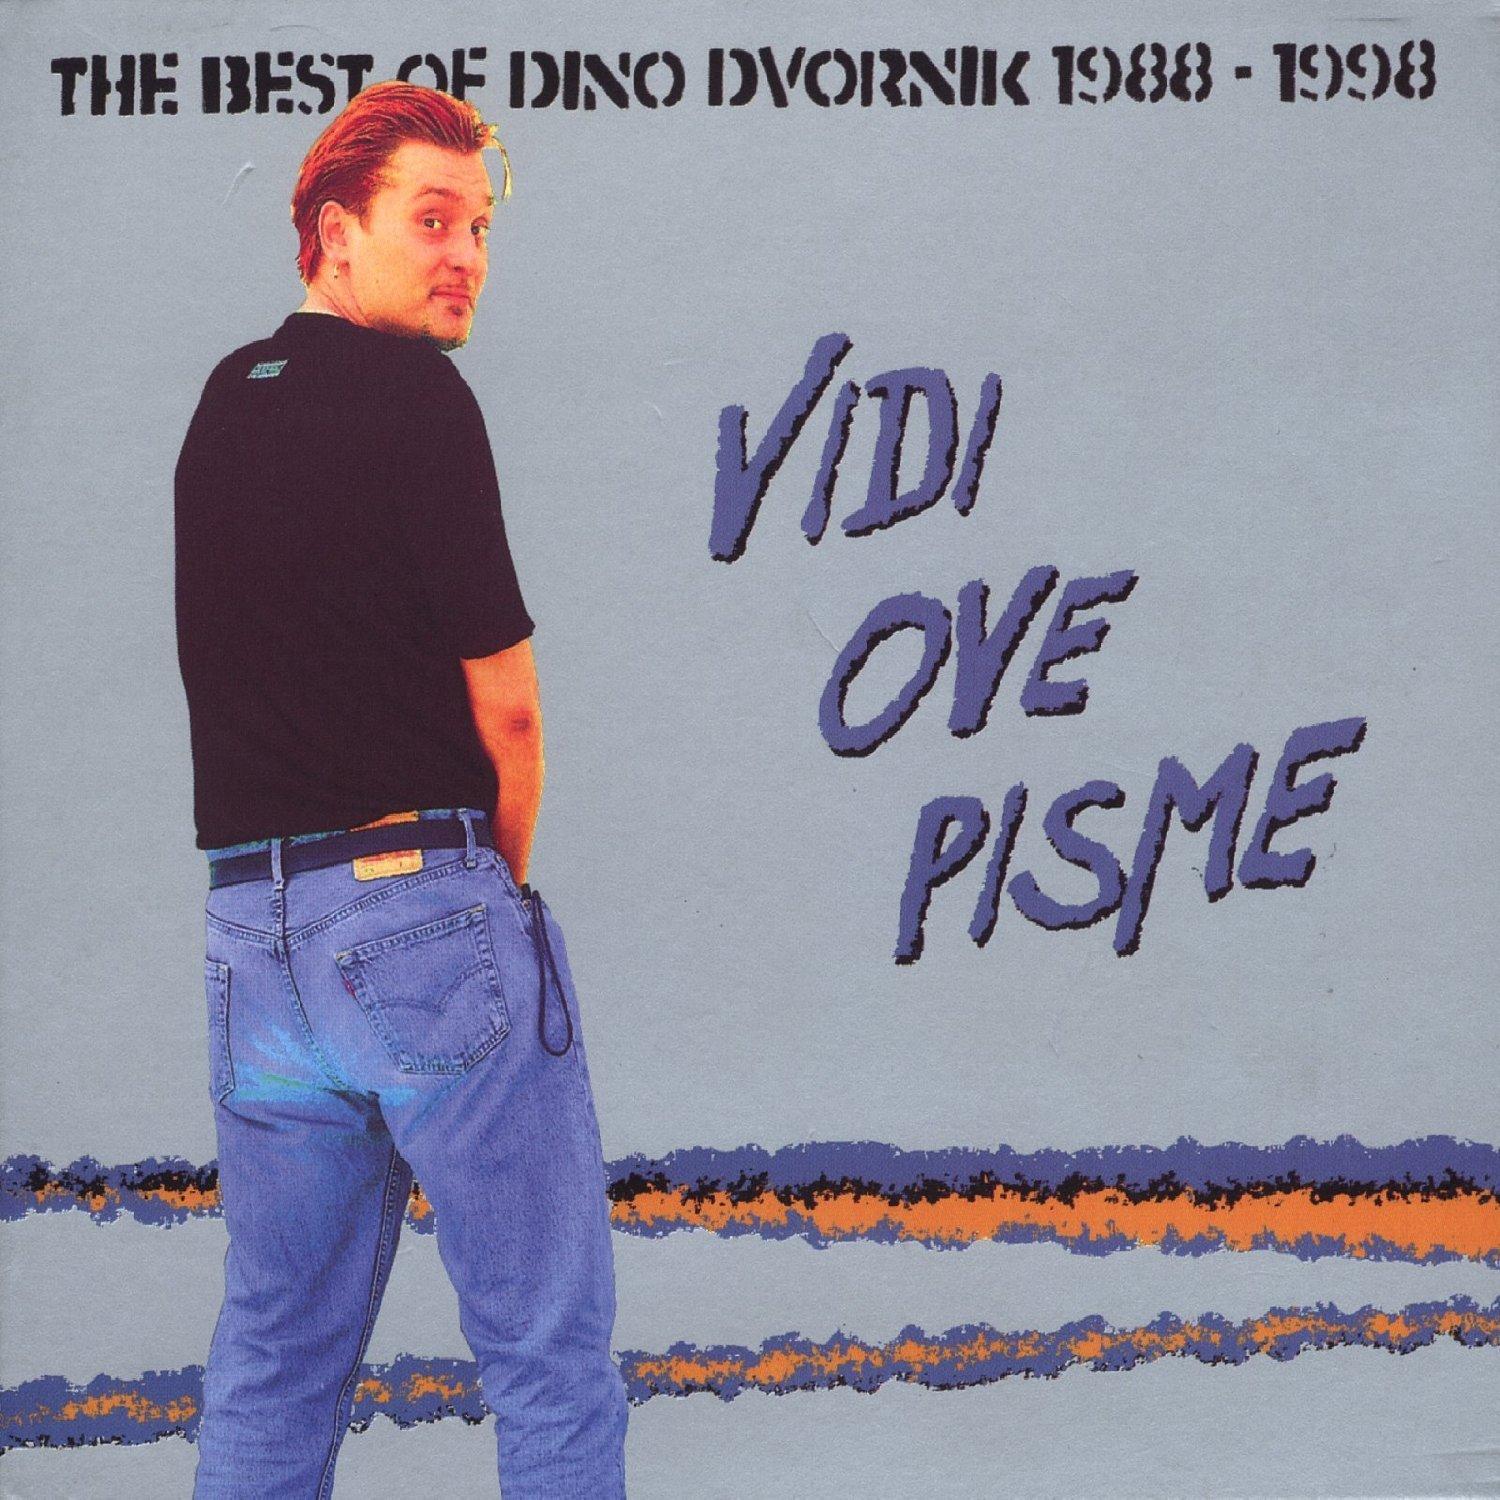 Selected image for DINO DVORNIK - The Best Of, Vidi ove pisme